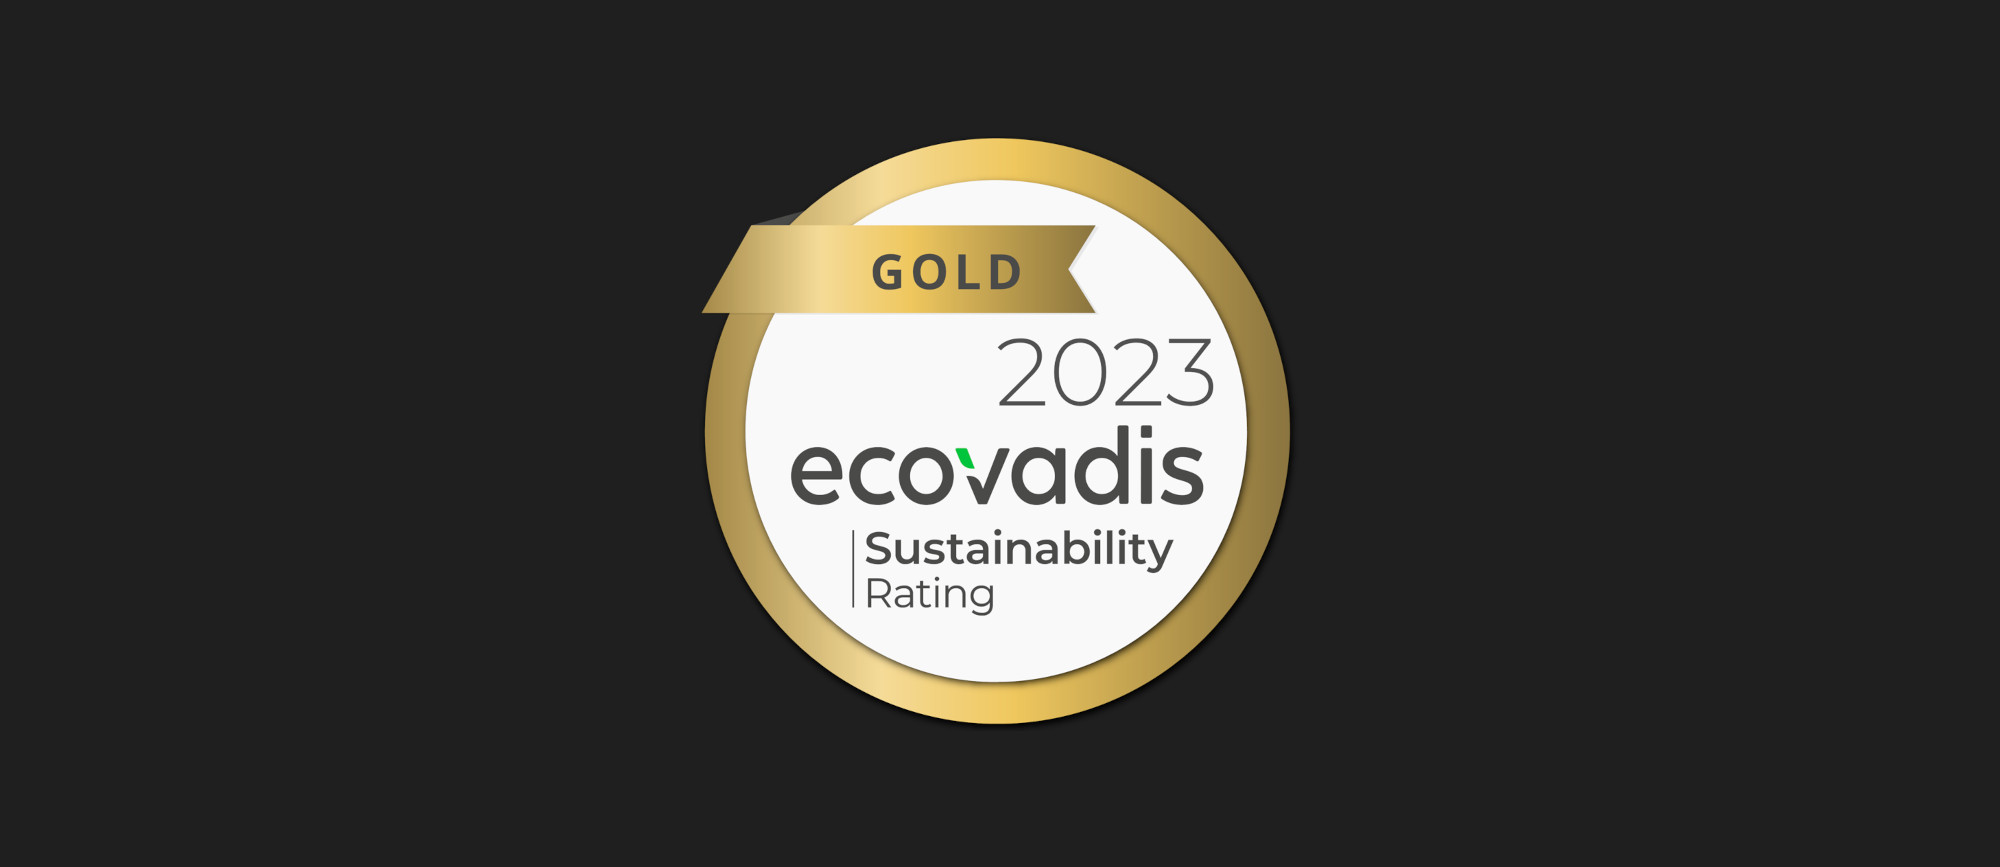 iGuzzini ottiene la Medaglia d’oro EcoVadis